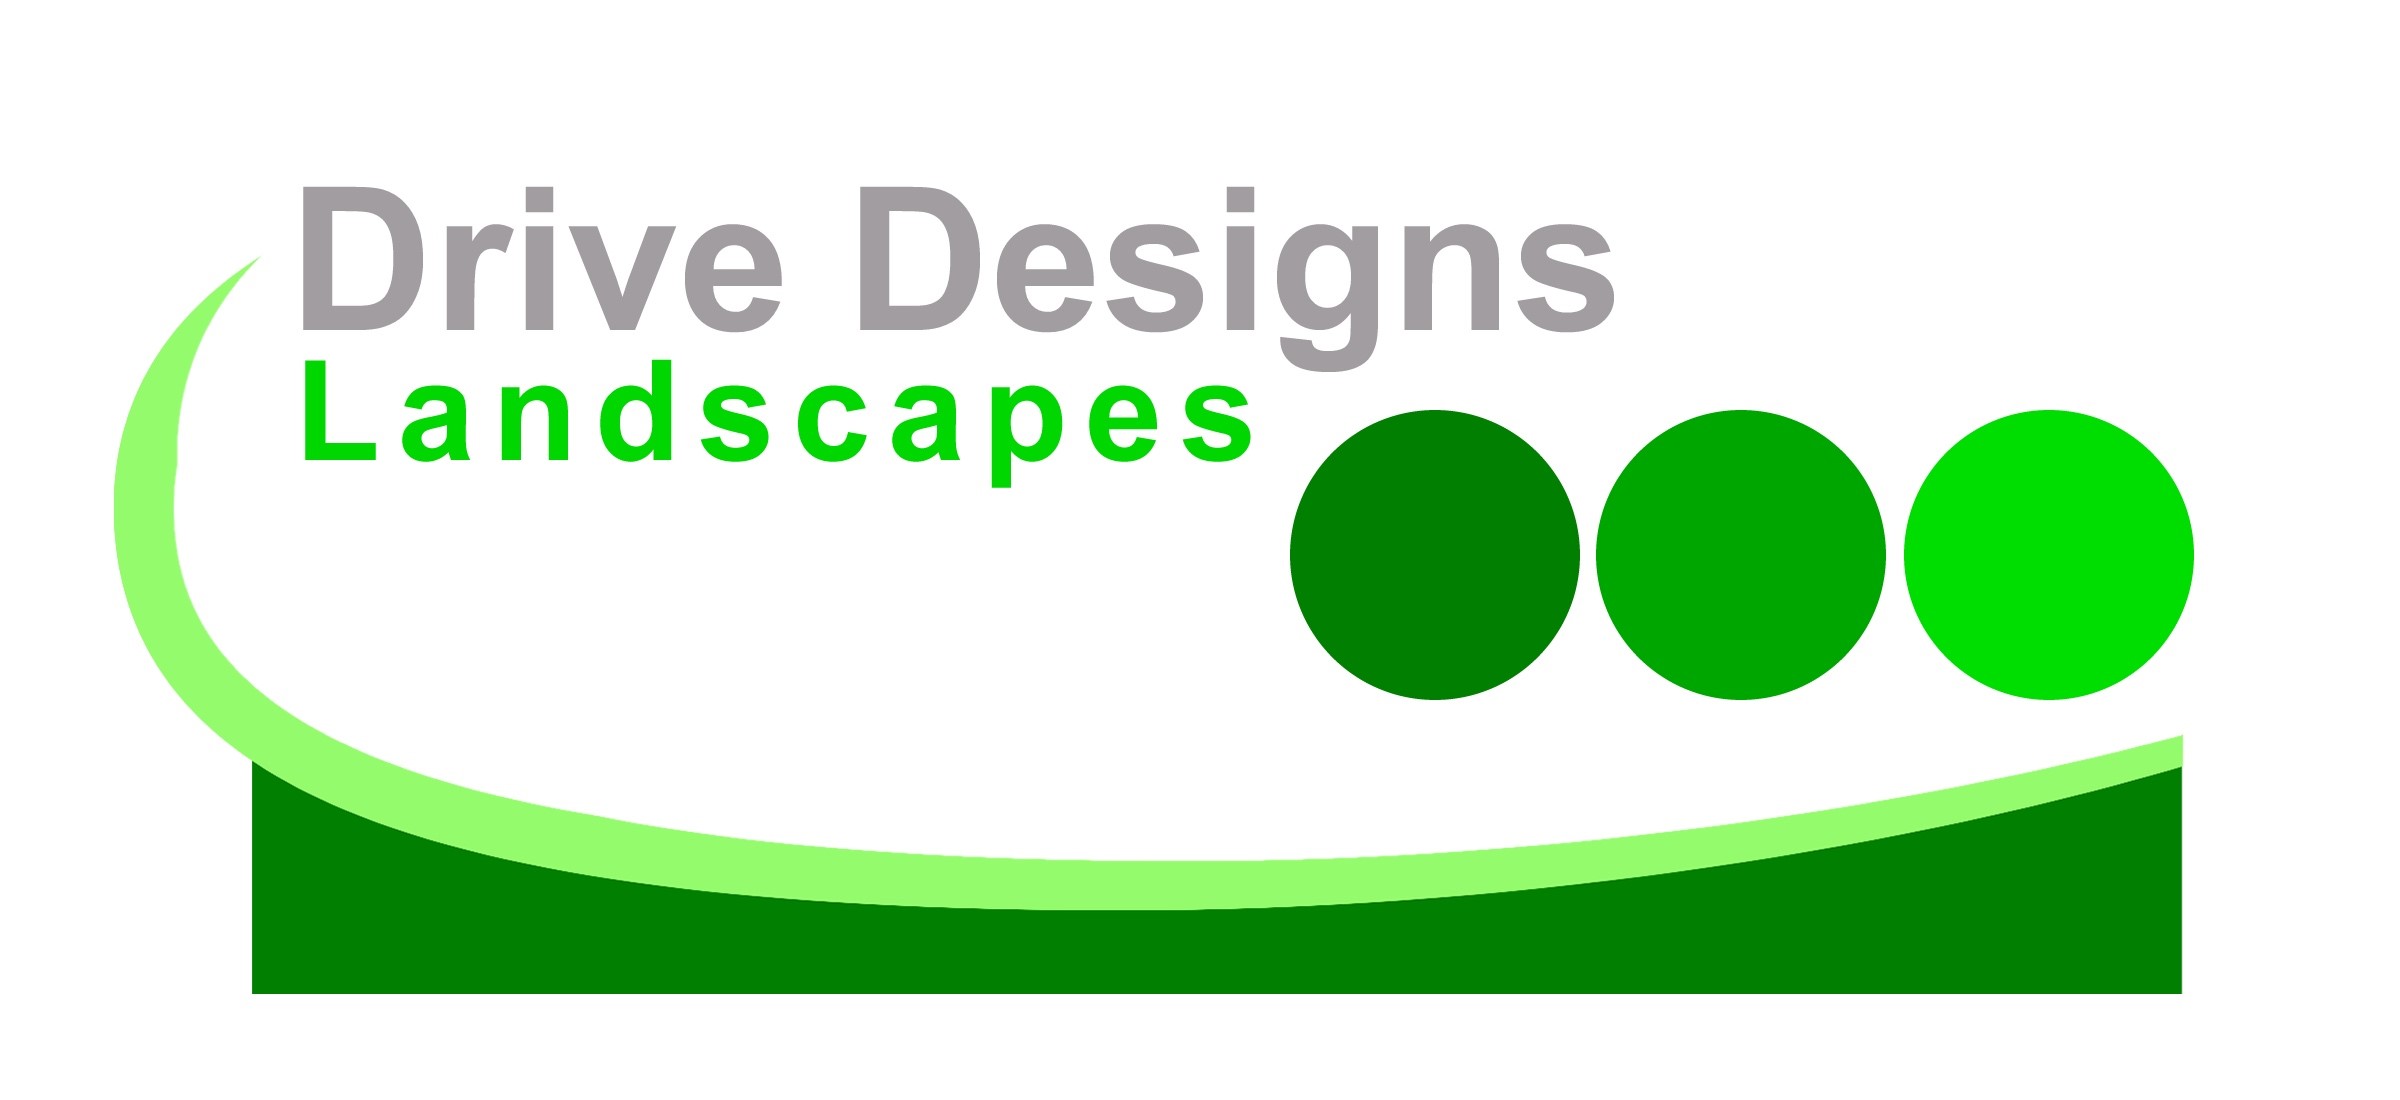 Drive Designs Landscapes